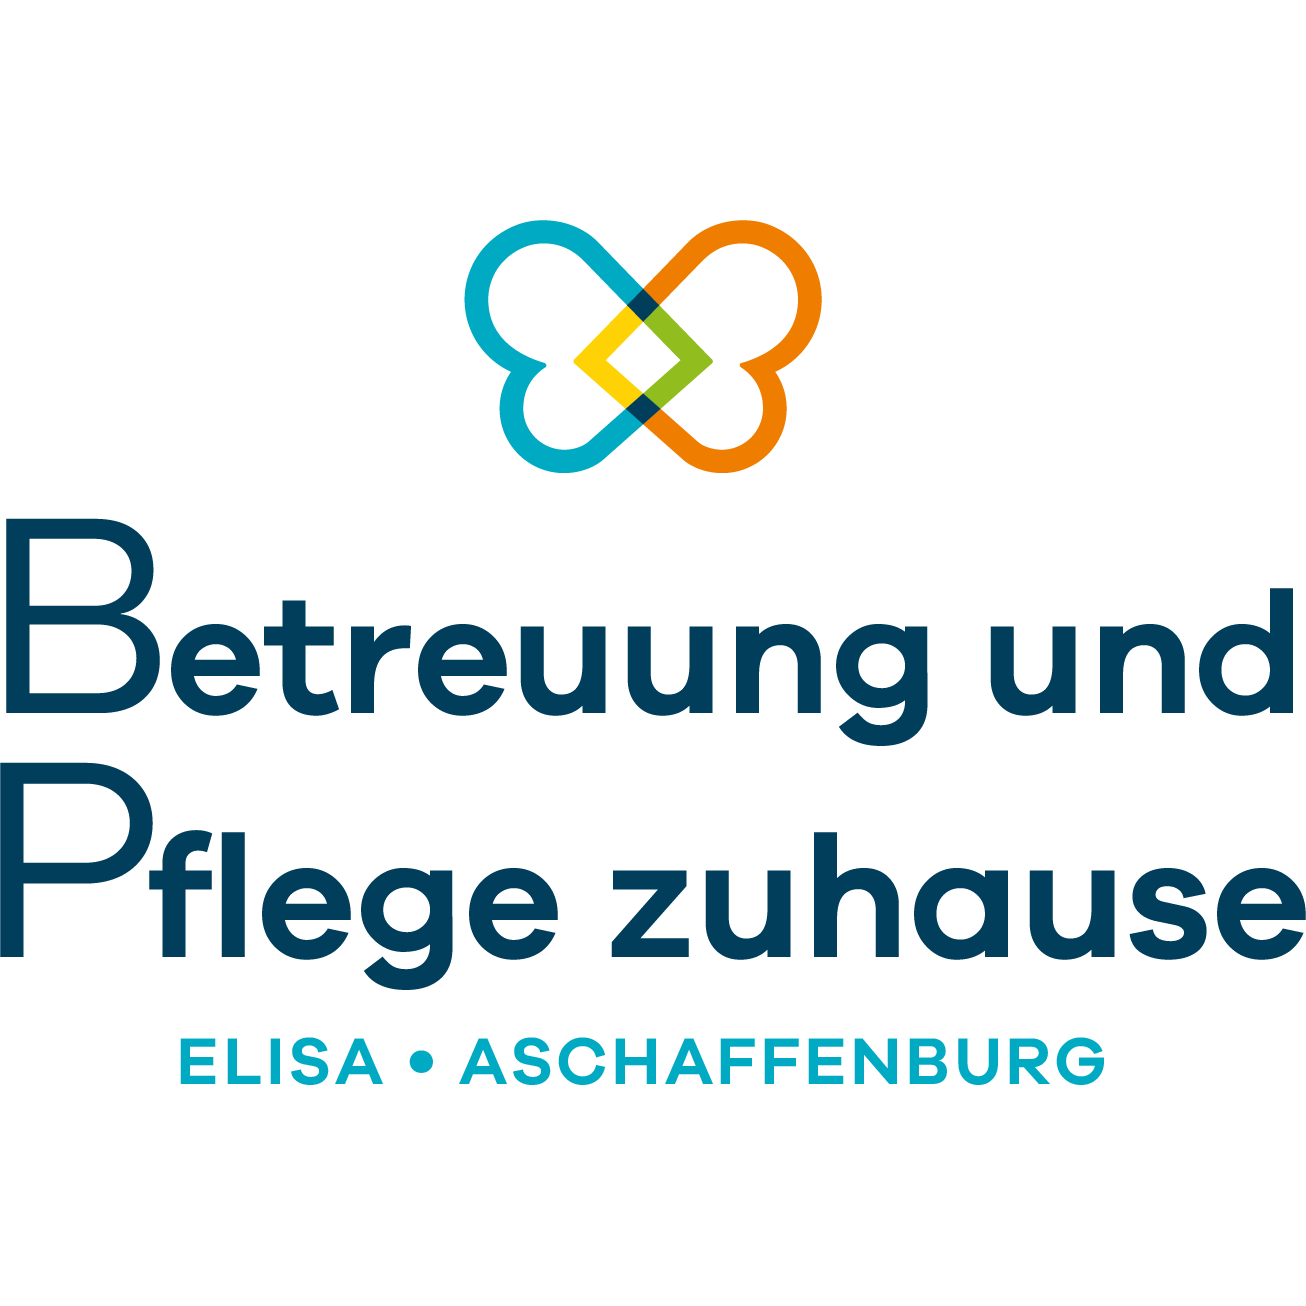 Betreuung und Pflege zuhause Curanum am Rhein Logo